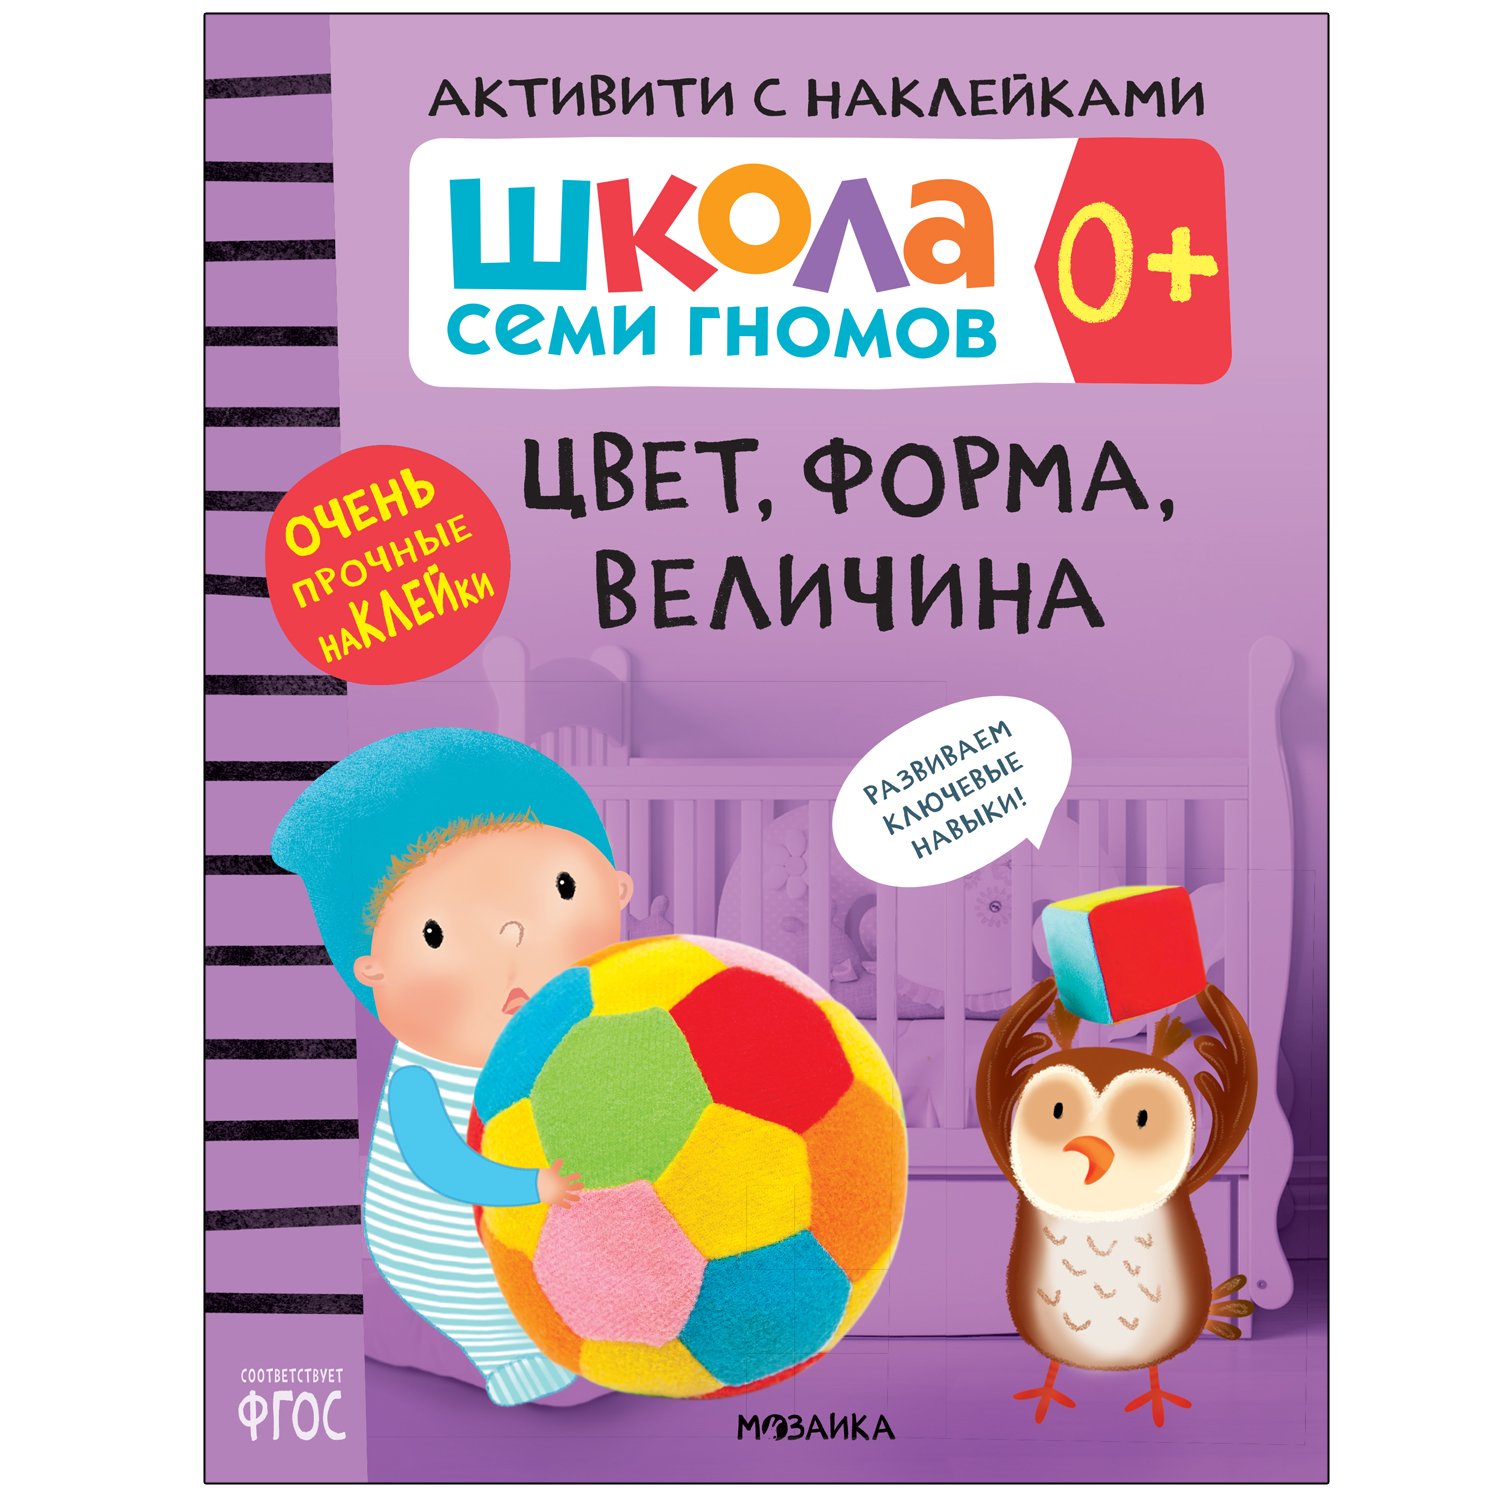 Книга МОЗАИКА kids Школа Cеми Гномов Активити с наклейками Цвет форма величина 0 - фото 1